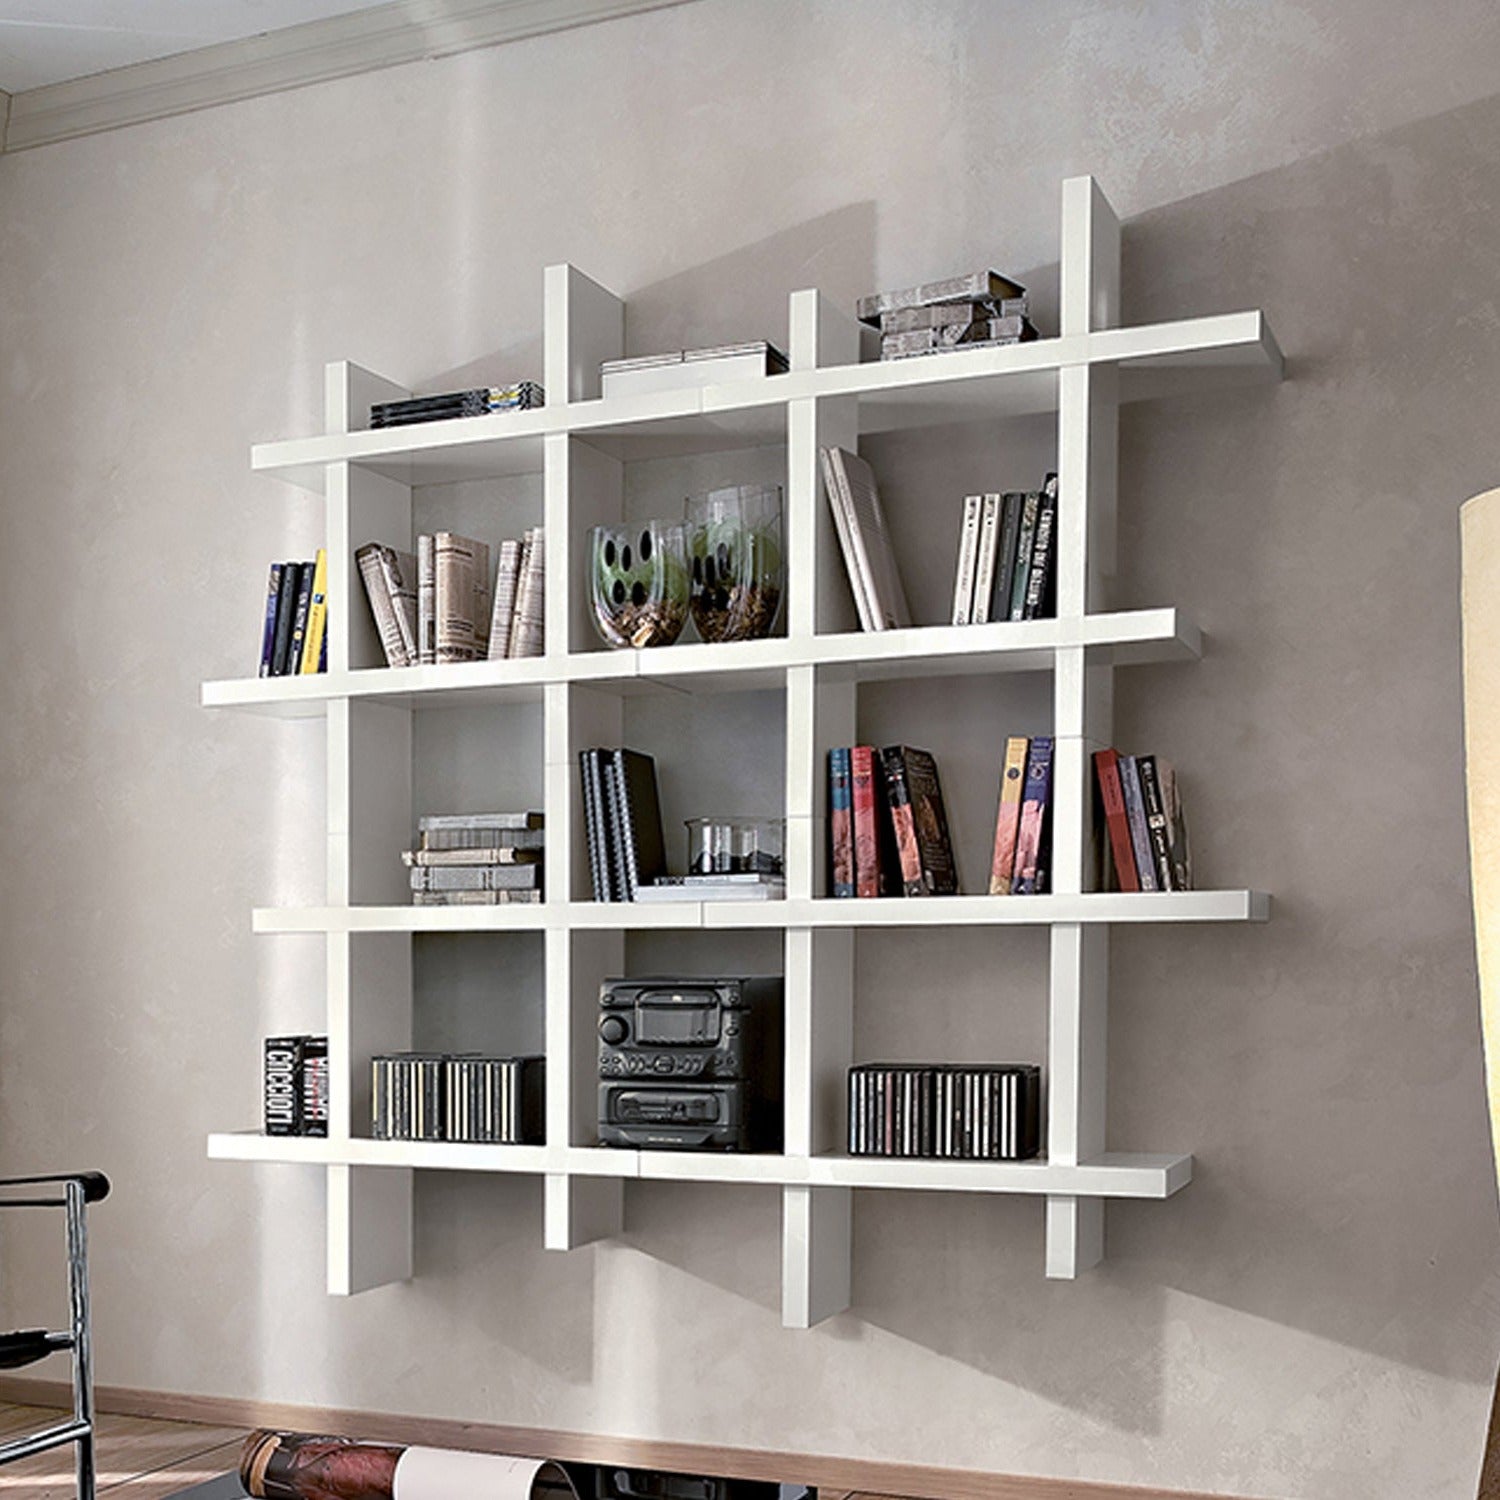 Alba Wall Mounted Bookcase by La Primavera